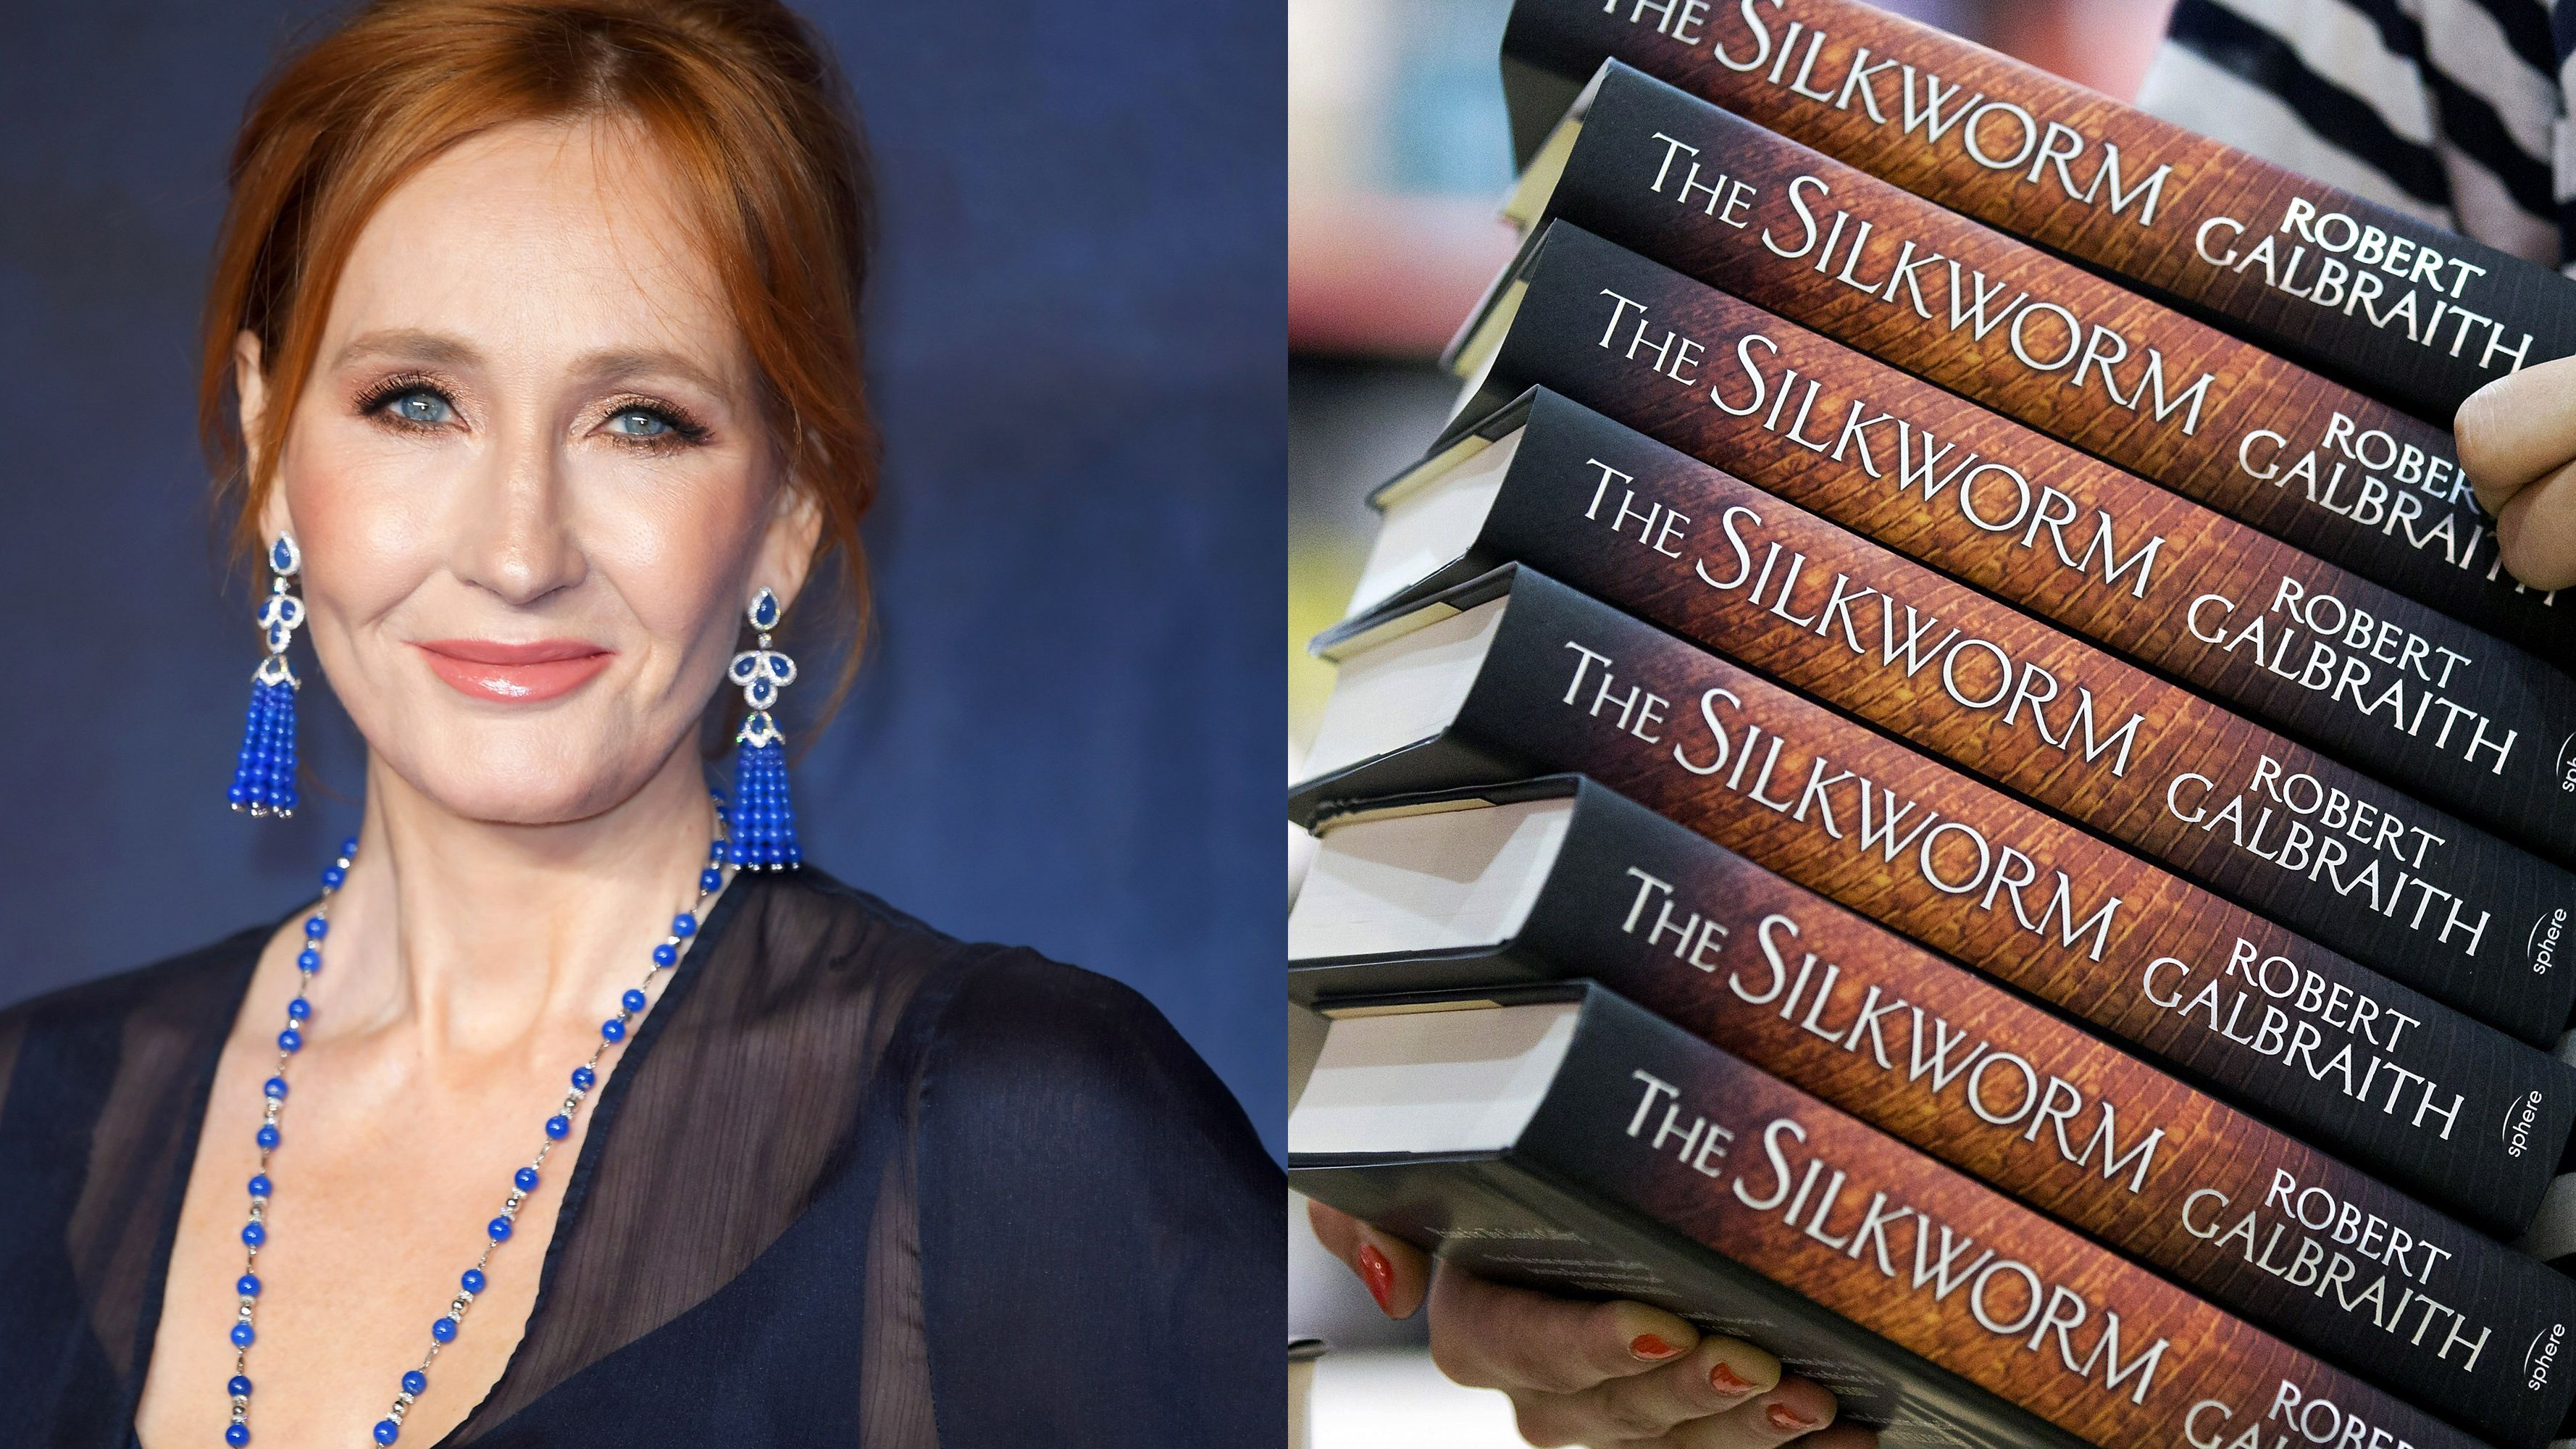 J.K. Rowling's Robert Galbraith Book Series Showed Her Beliefs